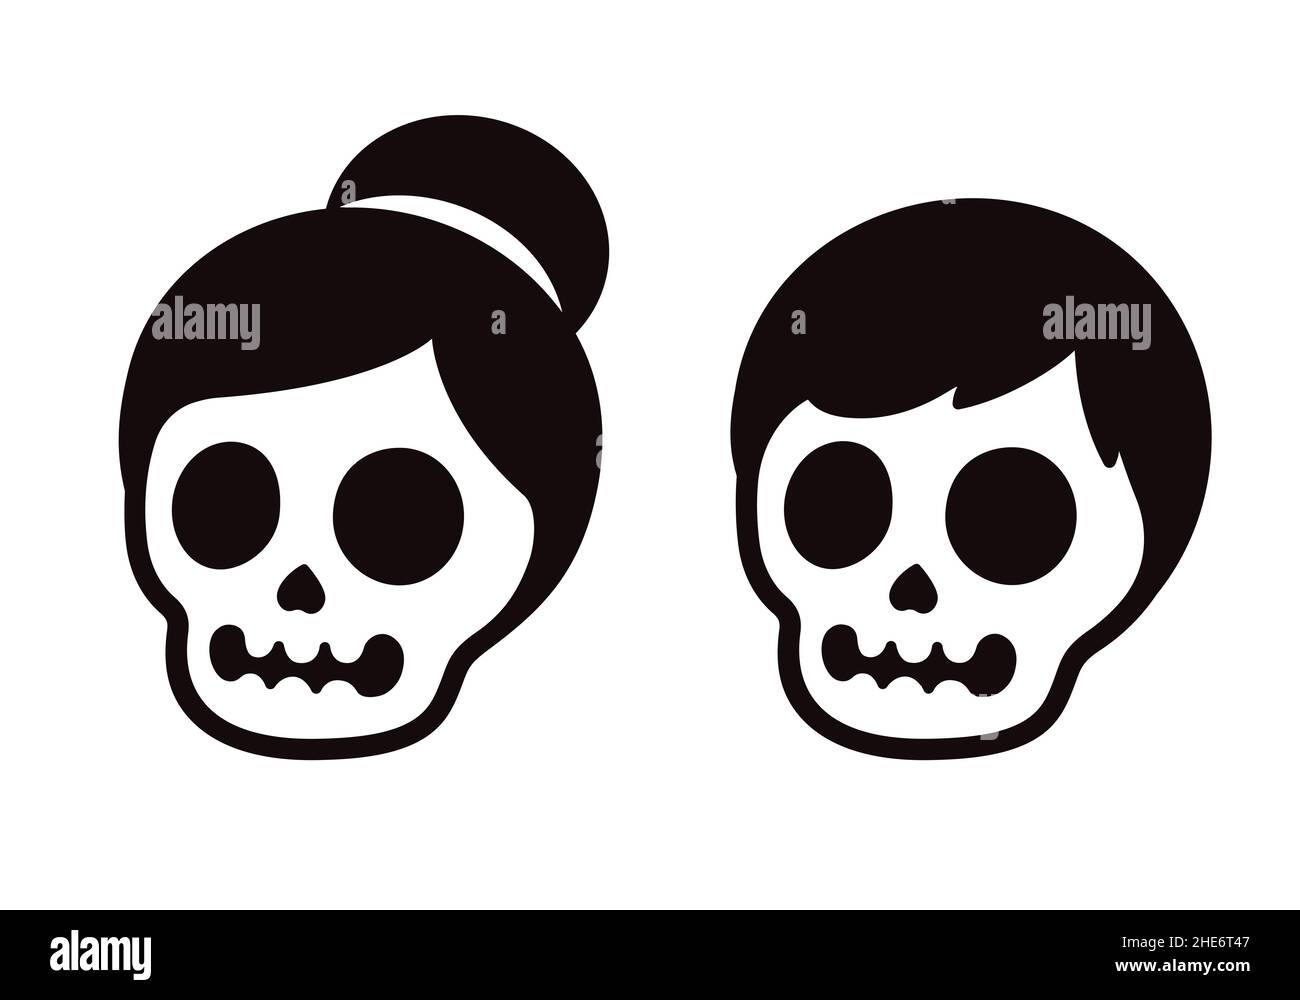 Cartoon Schädel Paar, männlich und weiblich. Zwei menschliche Schädel mit Haaren. Einfache Schwarz-Weiß-Symbole oder -Logos, Vektor-Clip-Art-Illustration. Stock Vektor